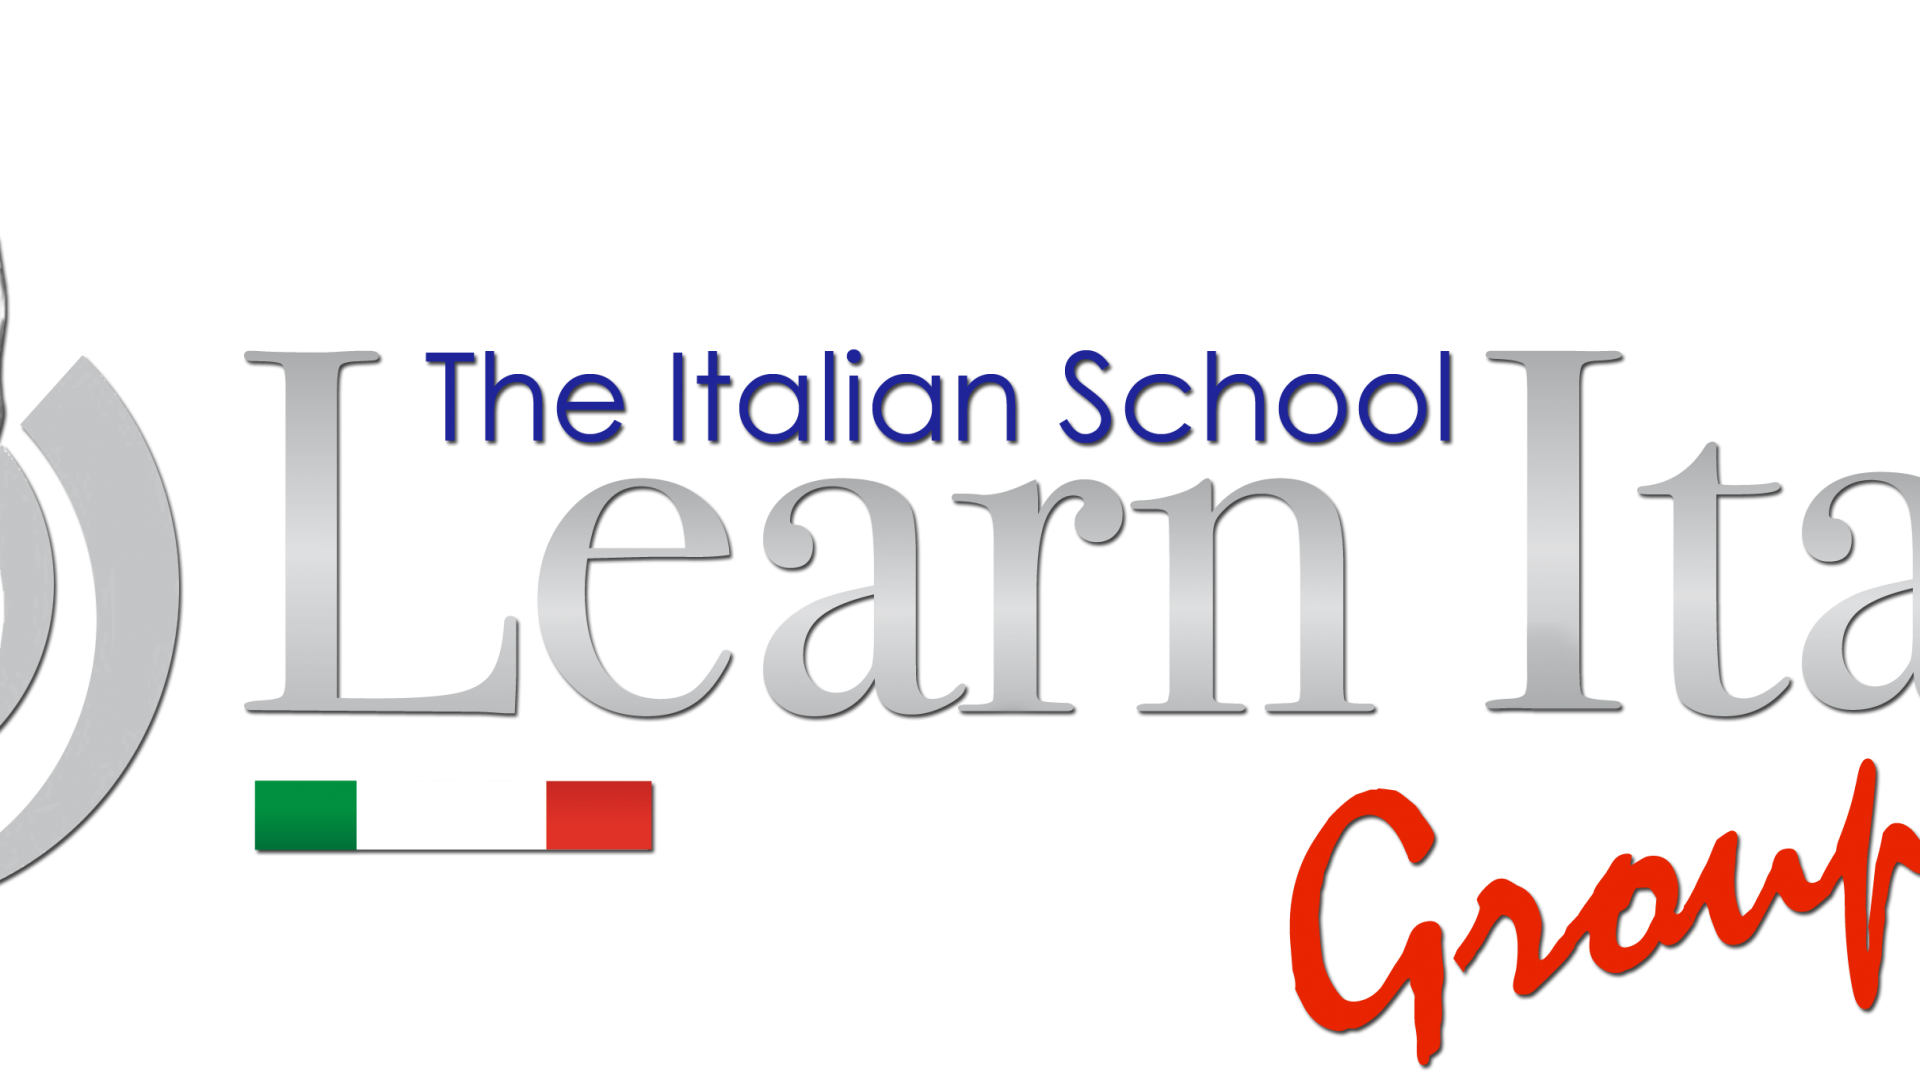 imparare l'italiano